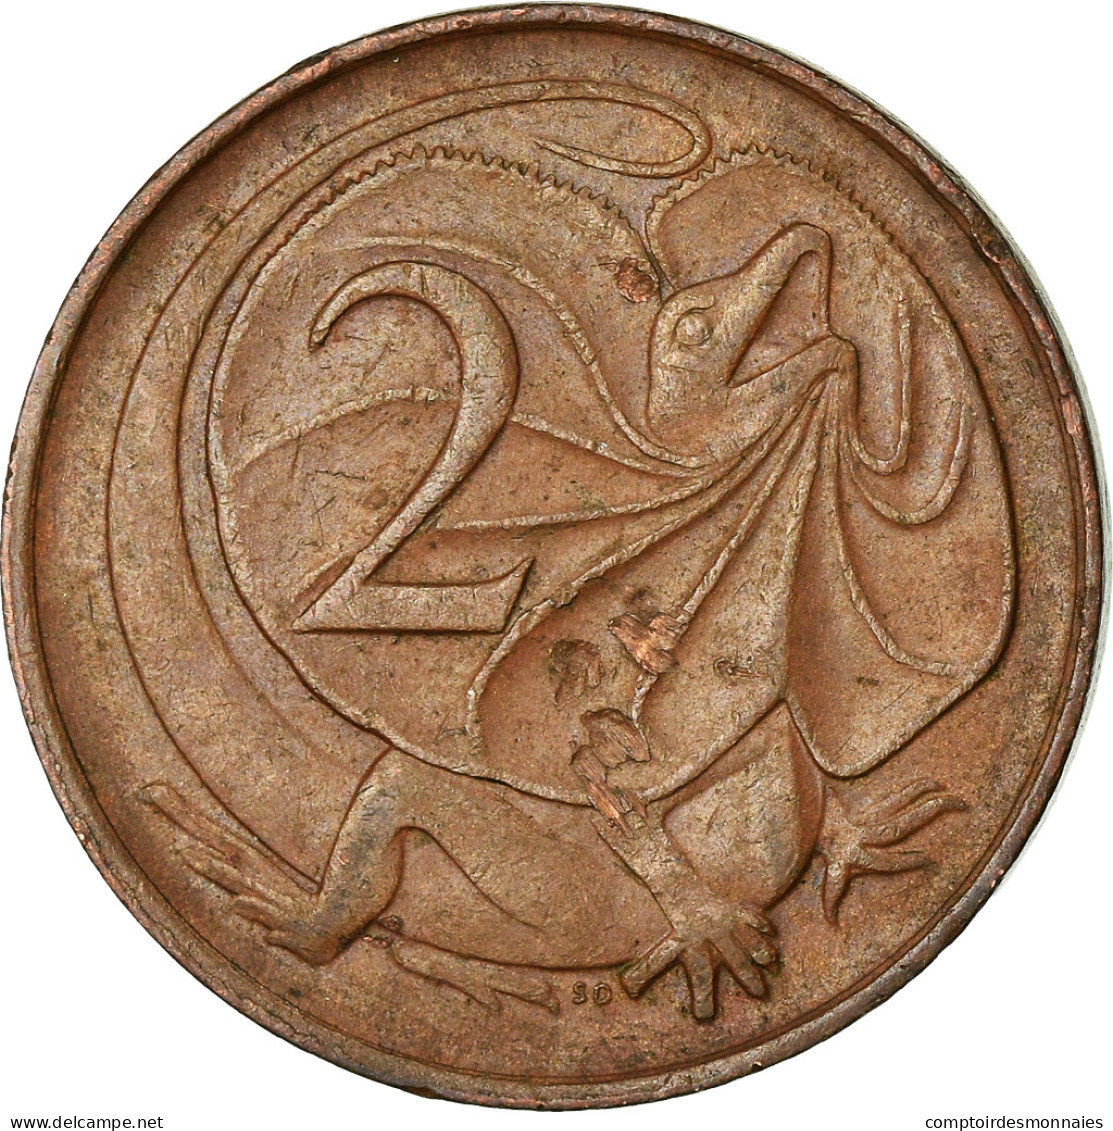 Monnaie, Australie, Elizabeth II, 2 Cents, 1967, TTB, Bronze, KM:63 - 2 Cents